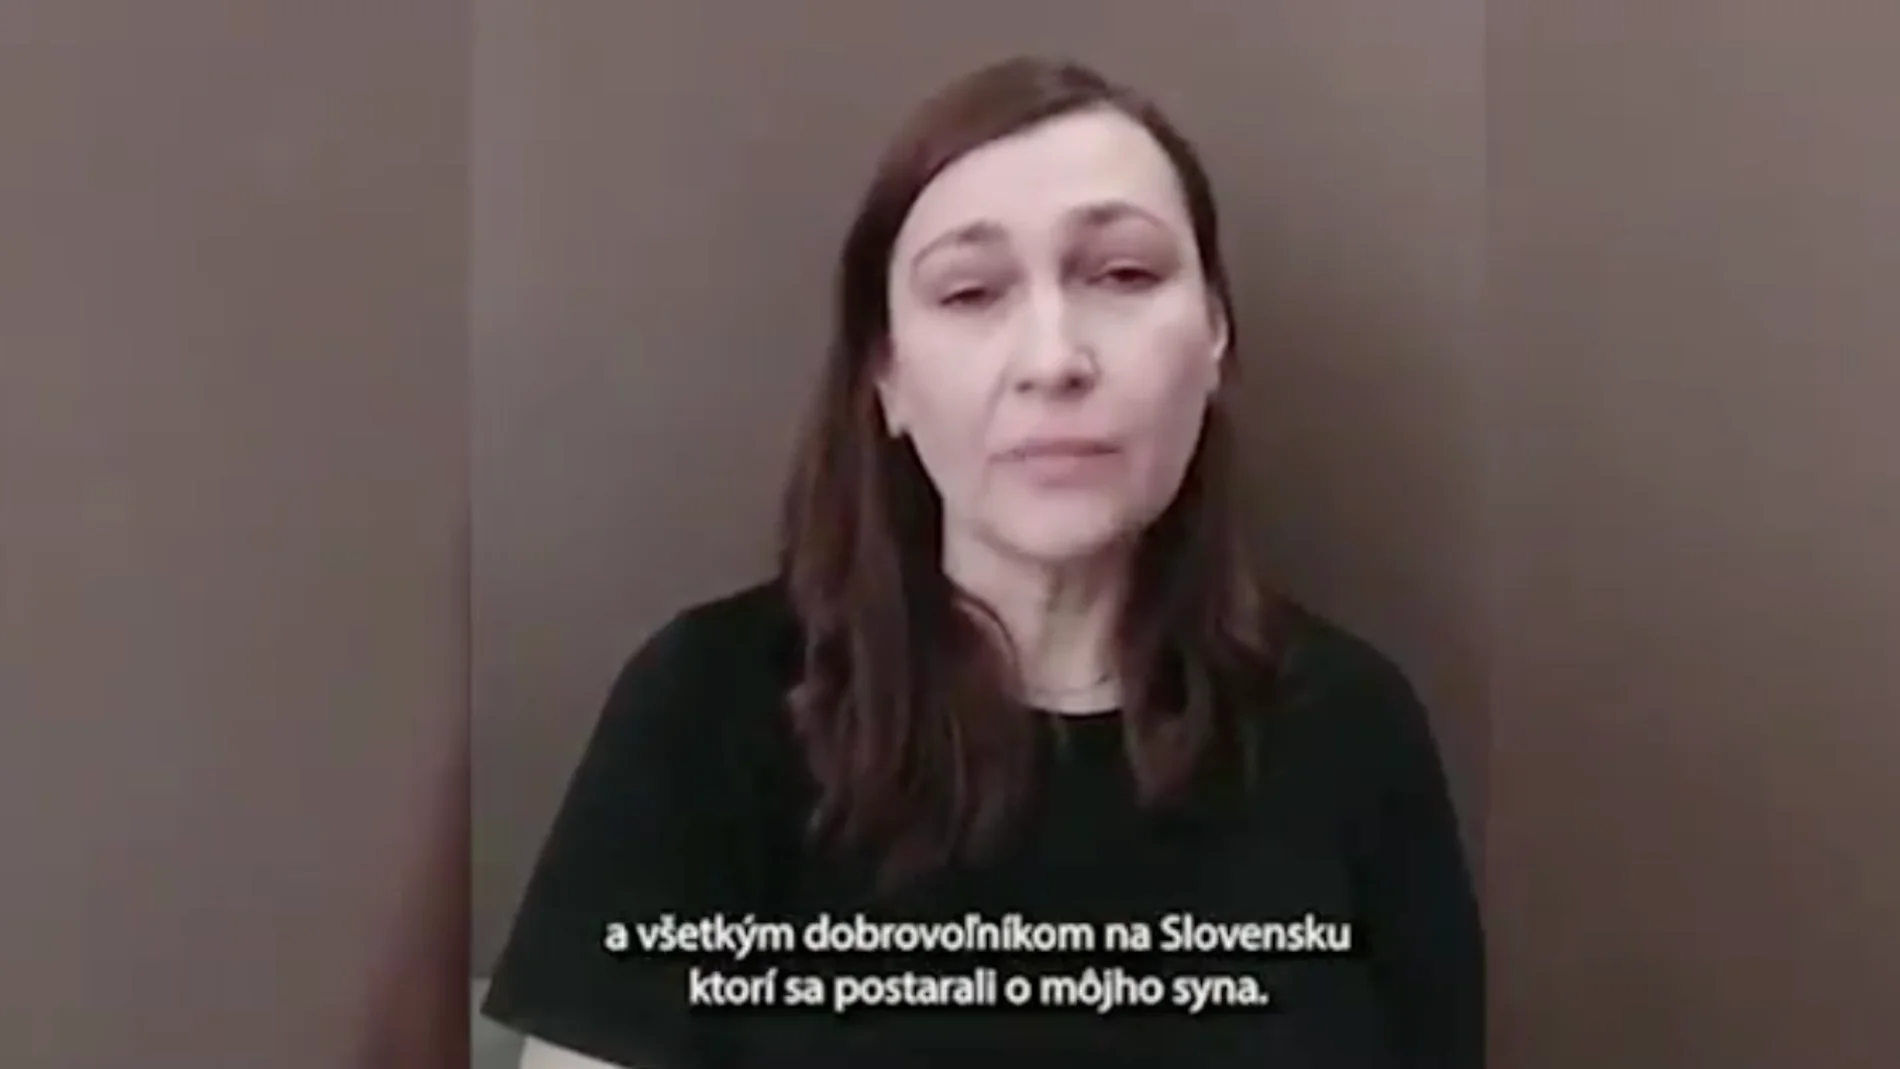 "Gracias por salvarle la vida", dice en un vídeo la madre del niño de 11 años que ha viajado solo desde Ucrania a Eslovaquia